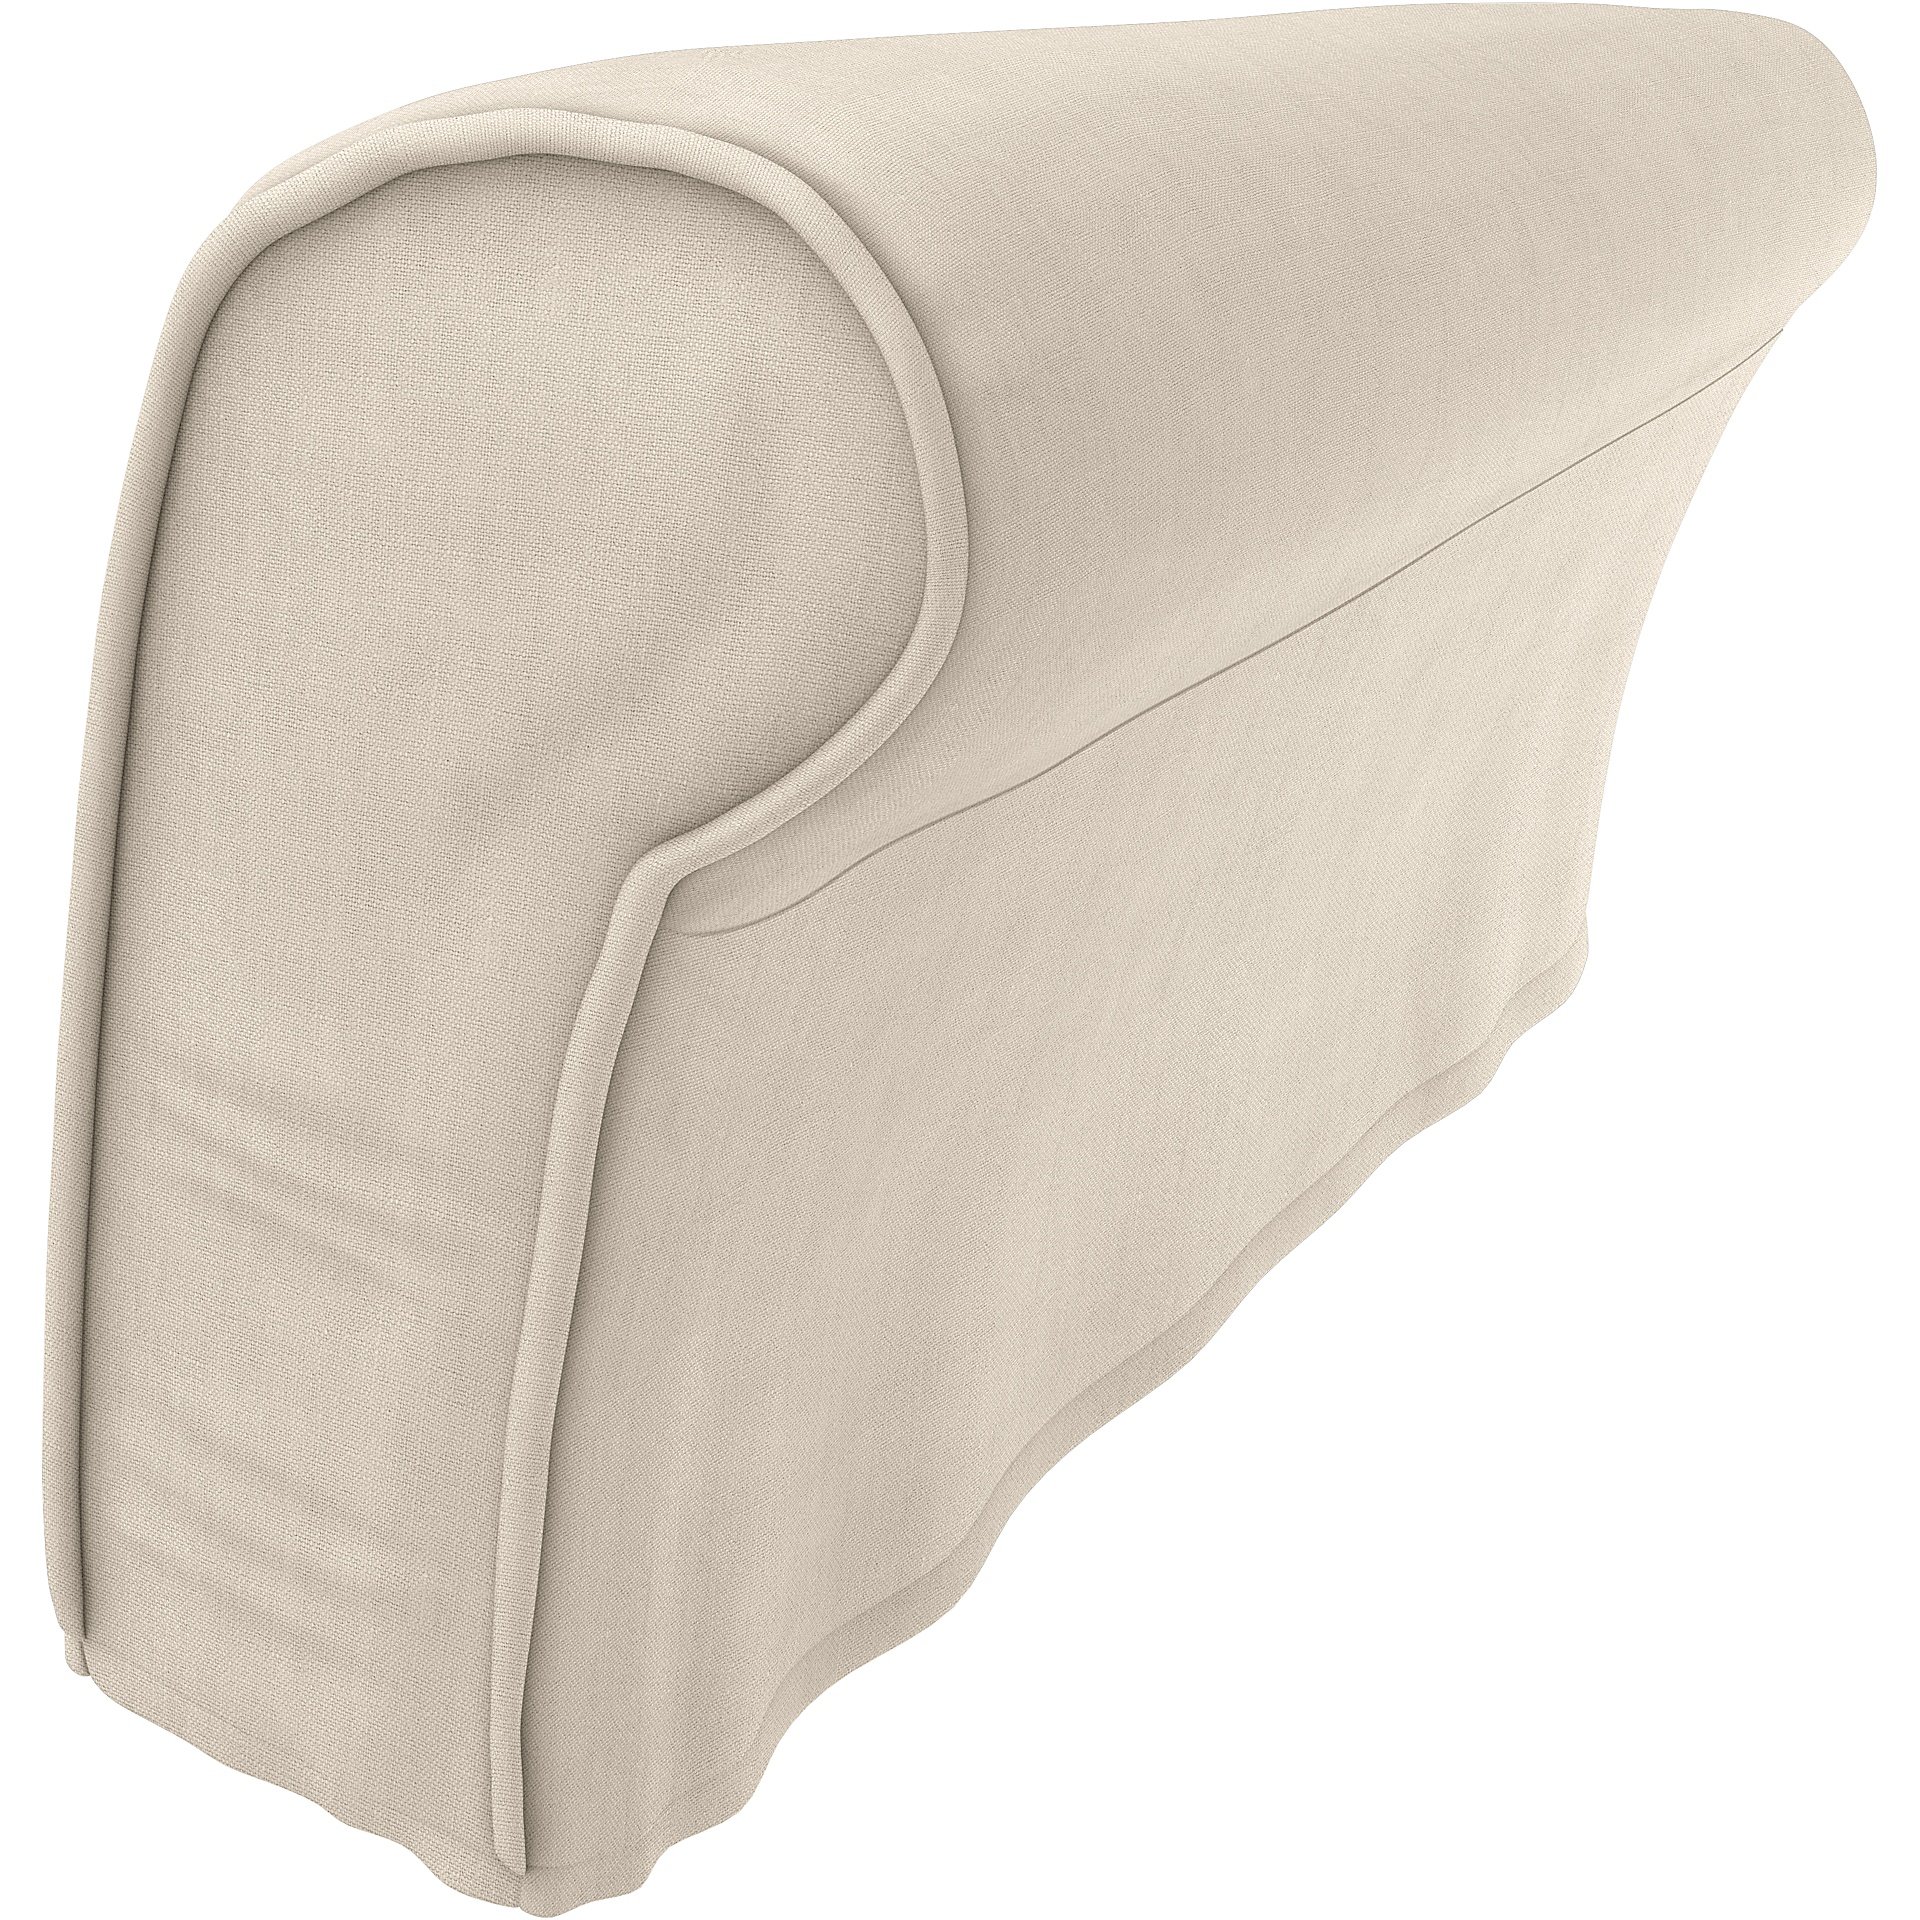 IKEA - Strandmon Armrest Protectors (One pair), Parchment, Linen - Bemz